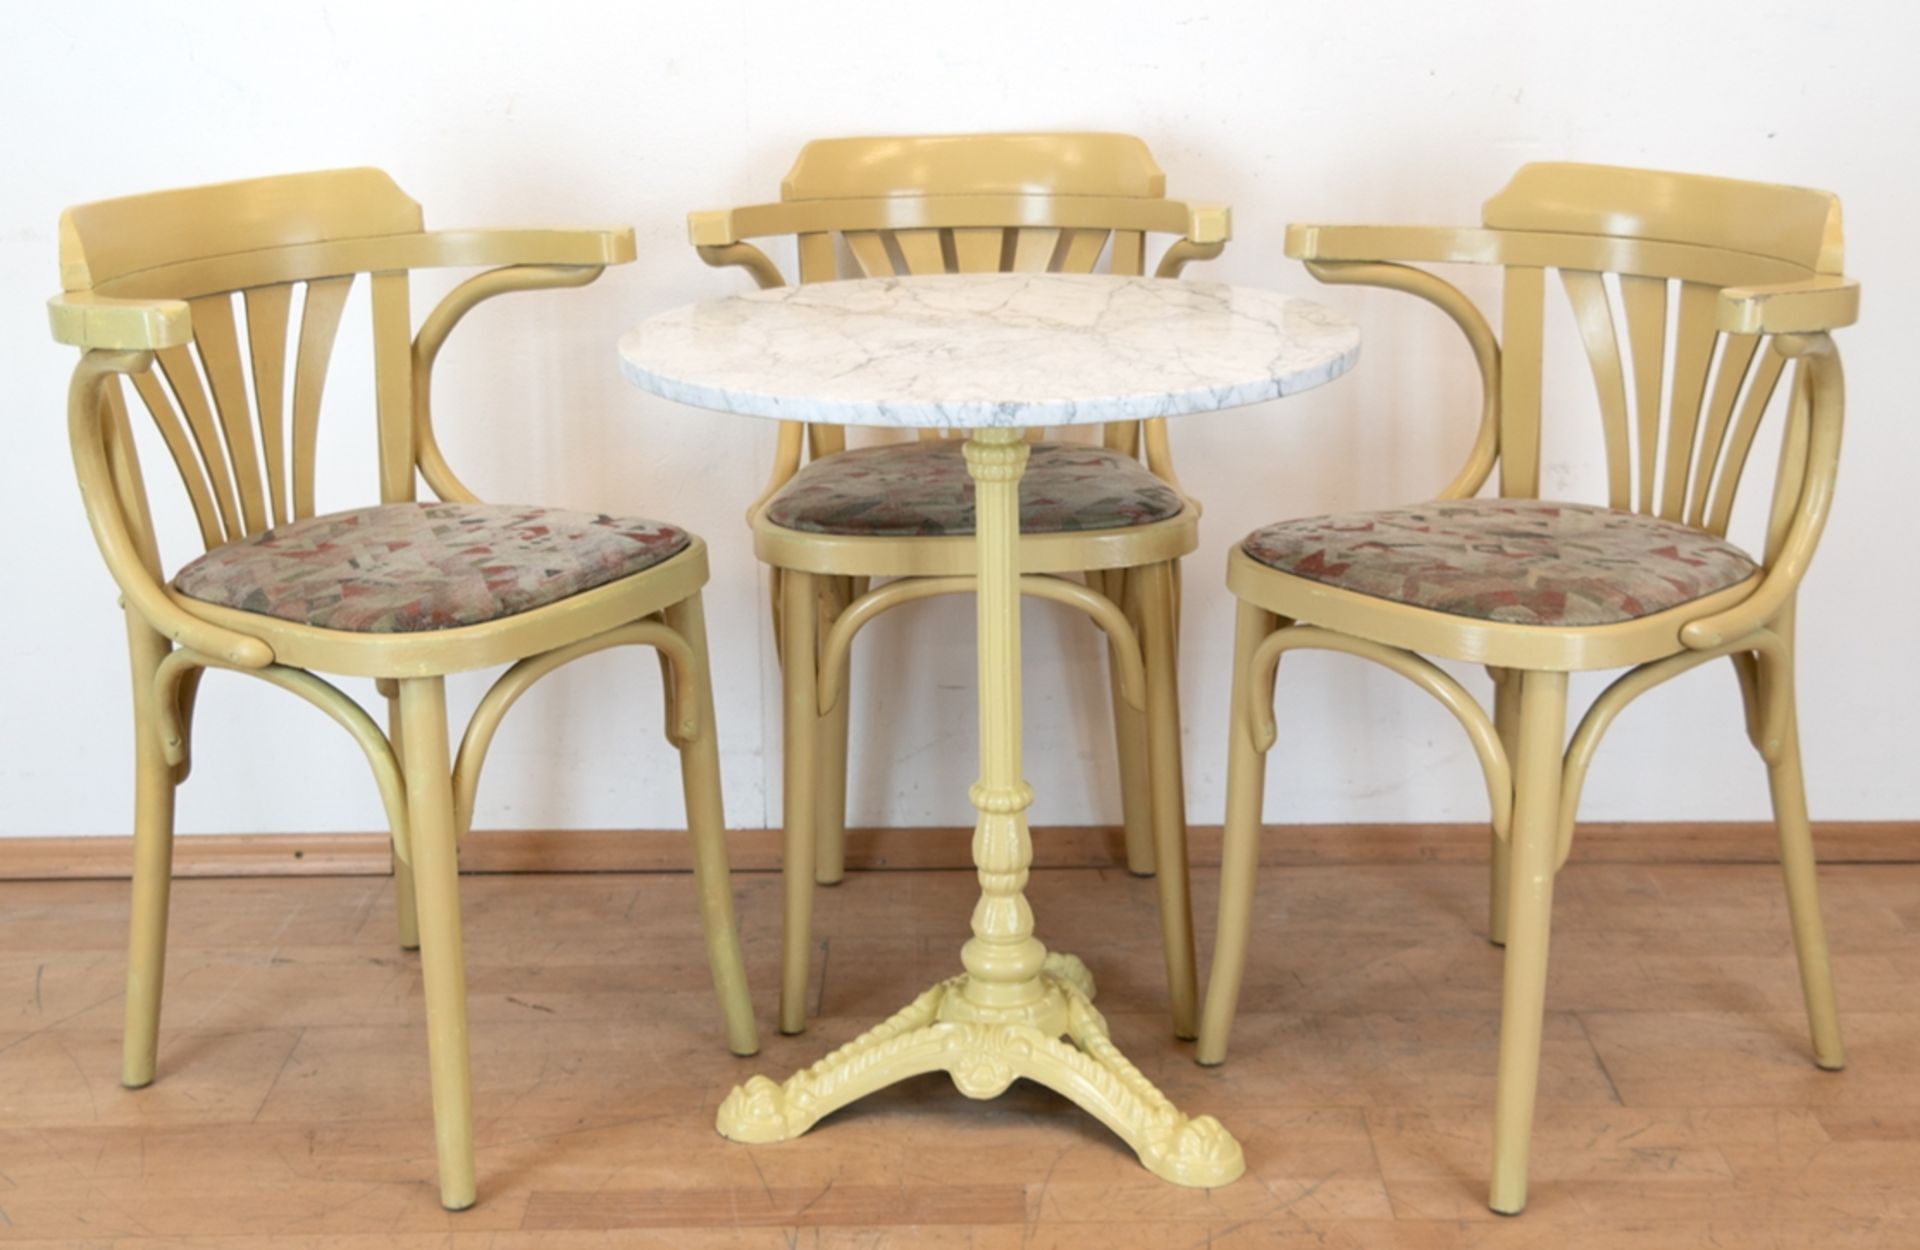 Bistro-Tisch mit 3 Stühlen im Thonetstil, beige gefaßt, Tisch mit Metallfuß und runder Marmorplatte